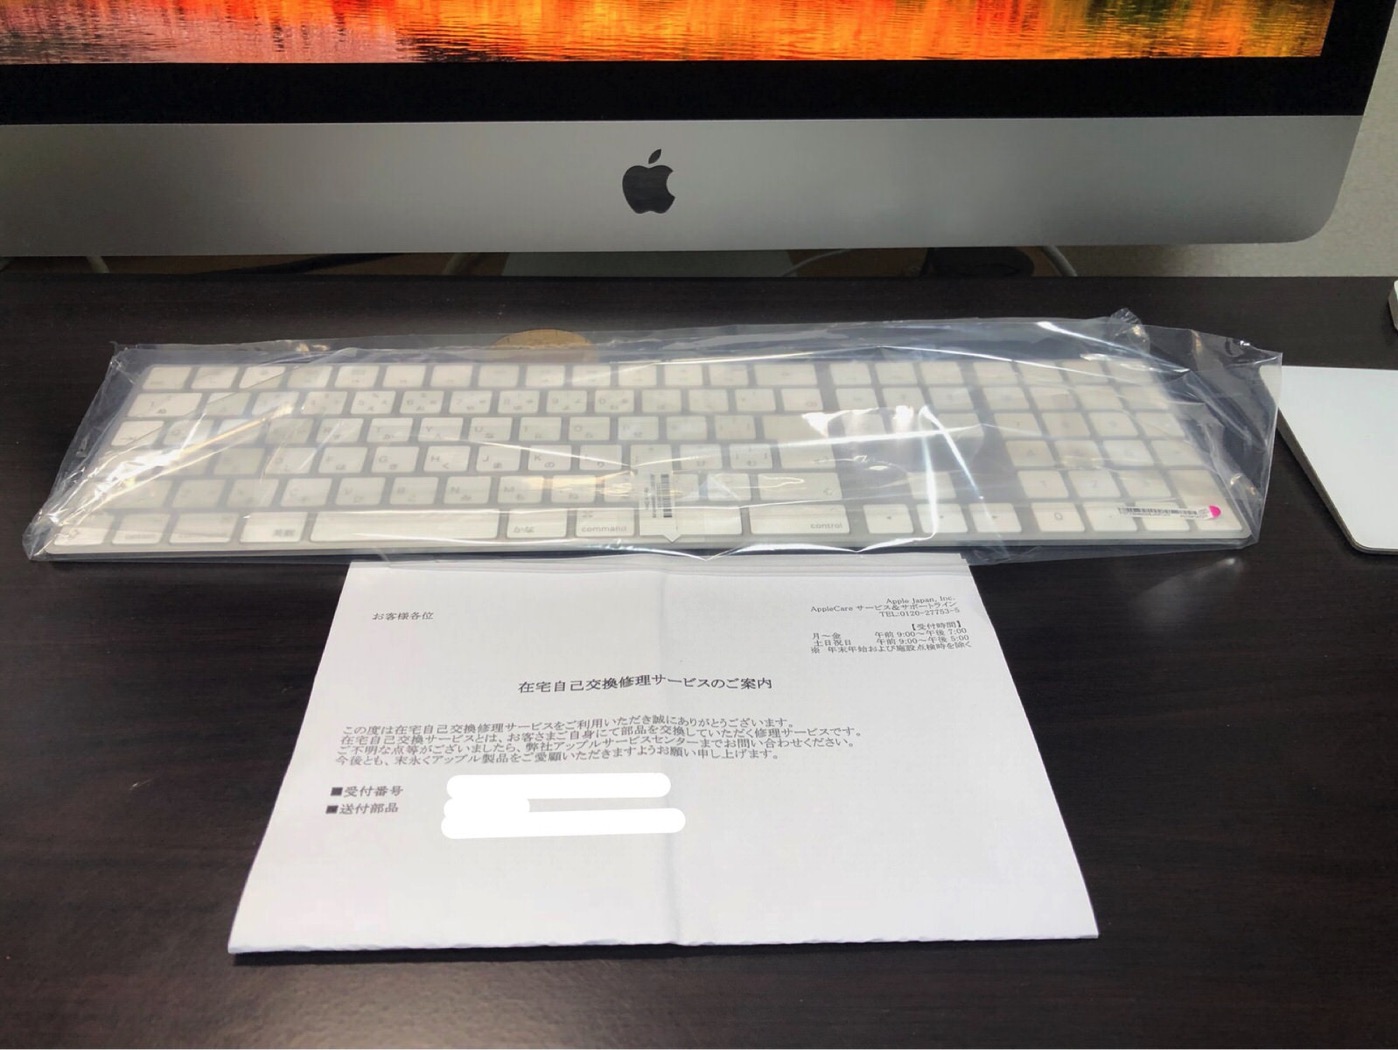 [Apple]変形した「Magic Keyboard（テンキー付き）- 日本語（JIS）」の交換品が1ヶ月待って届いたのですが笑顔で受け取ったよ